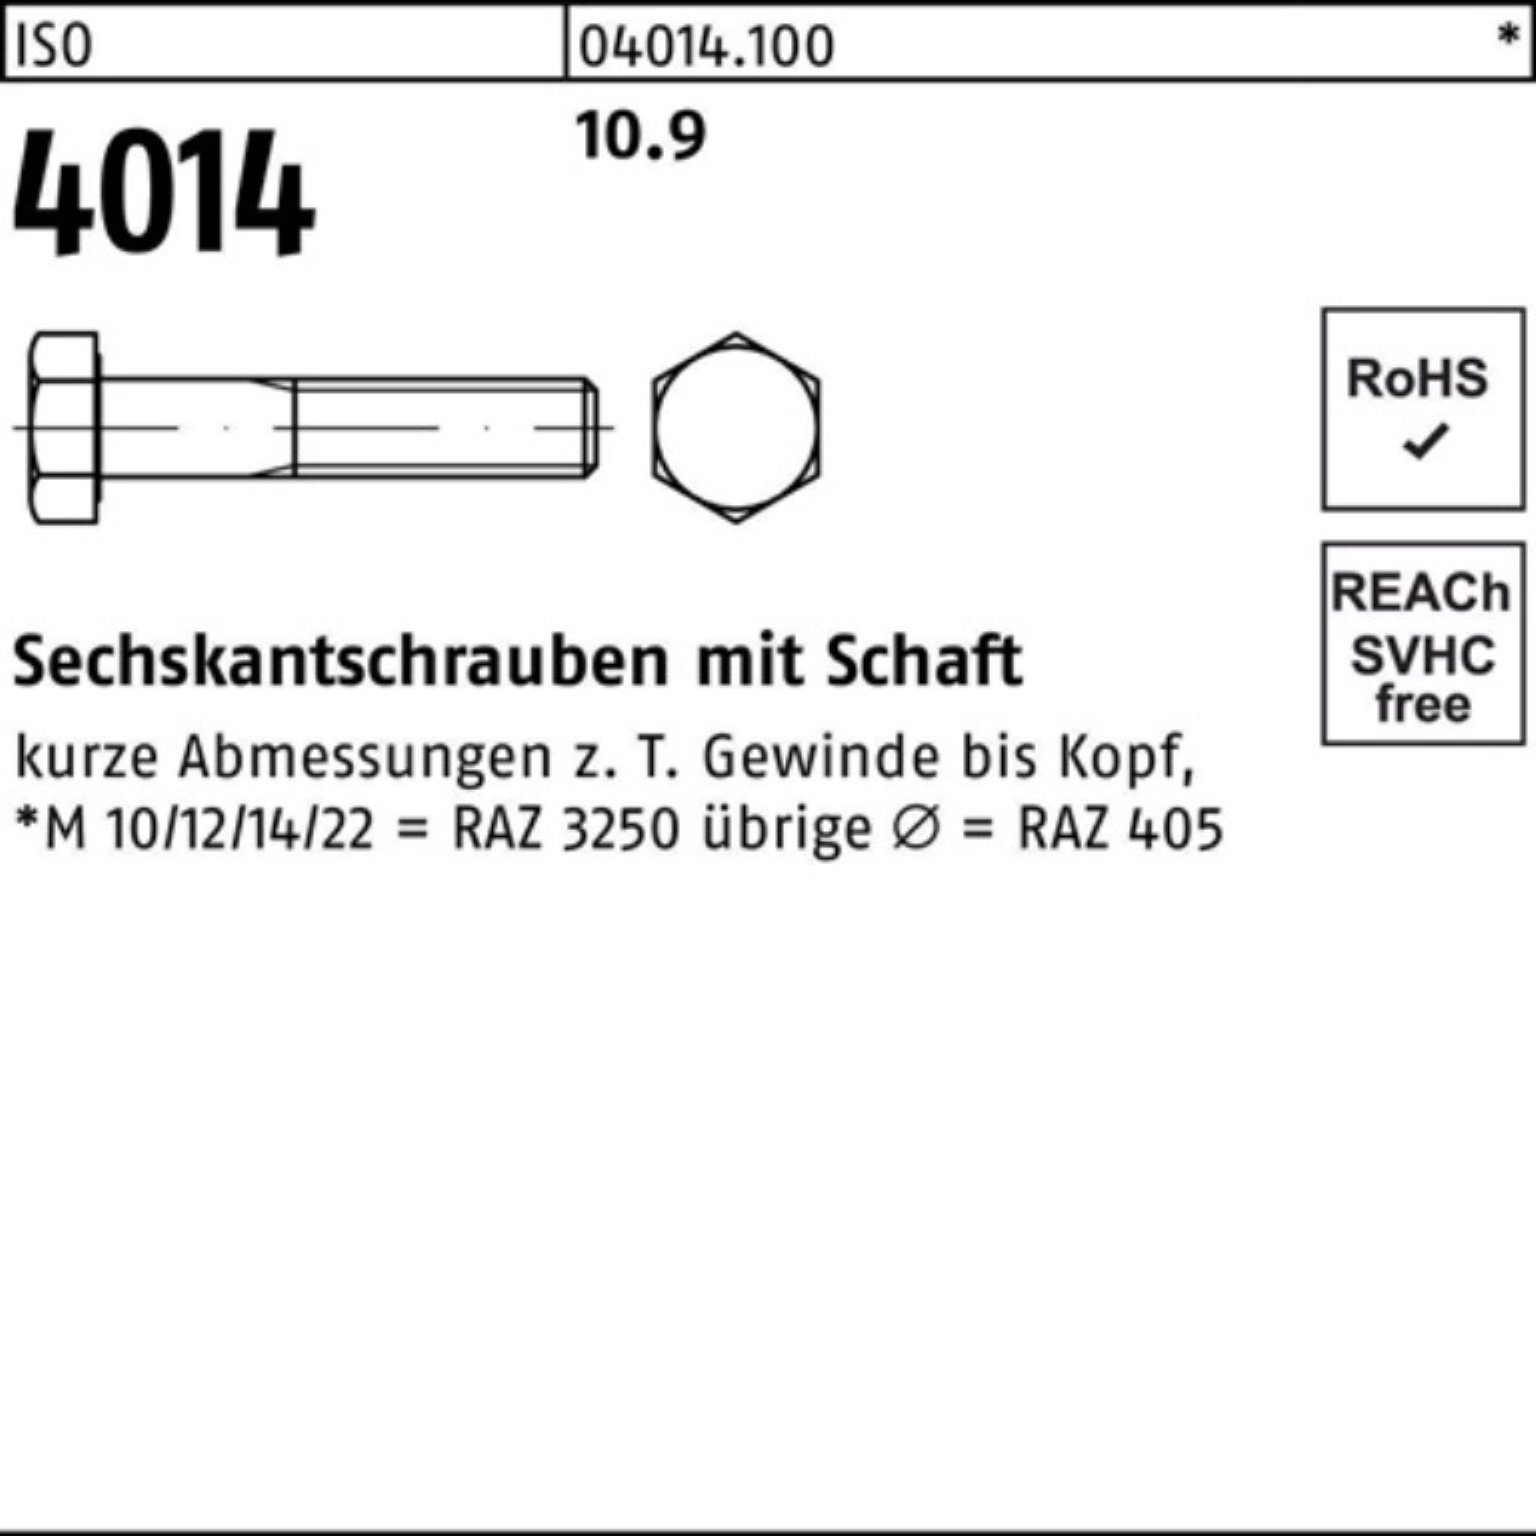 Bufab IS 10.9 Pack 4014 Sechskantschraube ISO Stück M39x Sechskantschraube 1 170 Schaft 100er